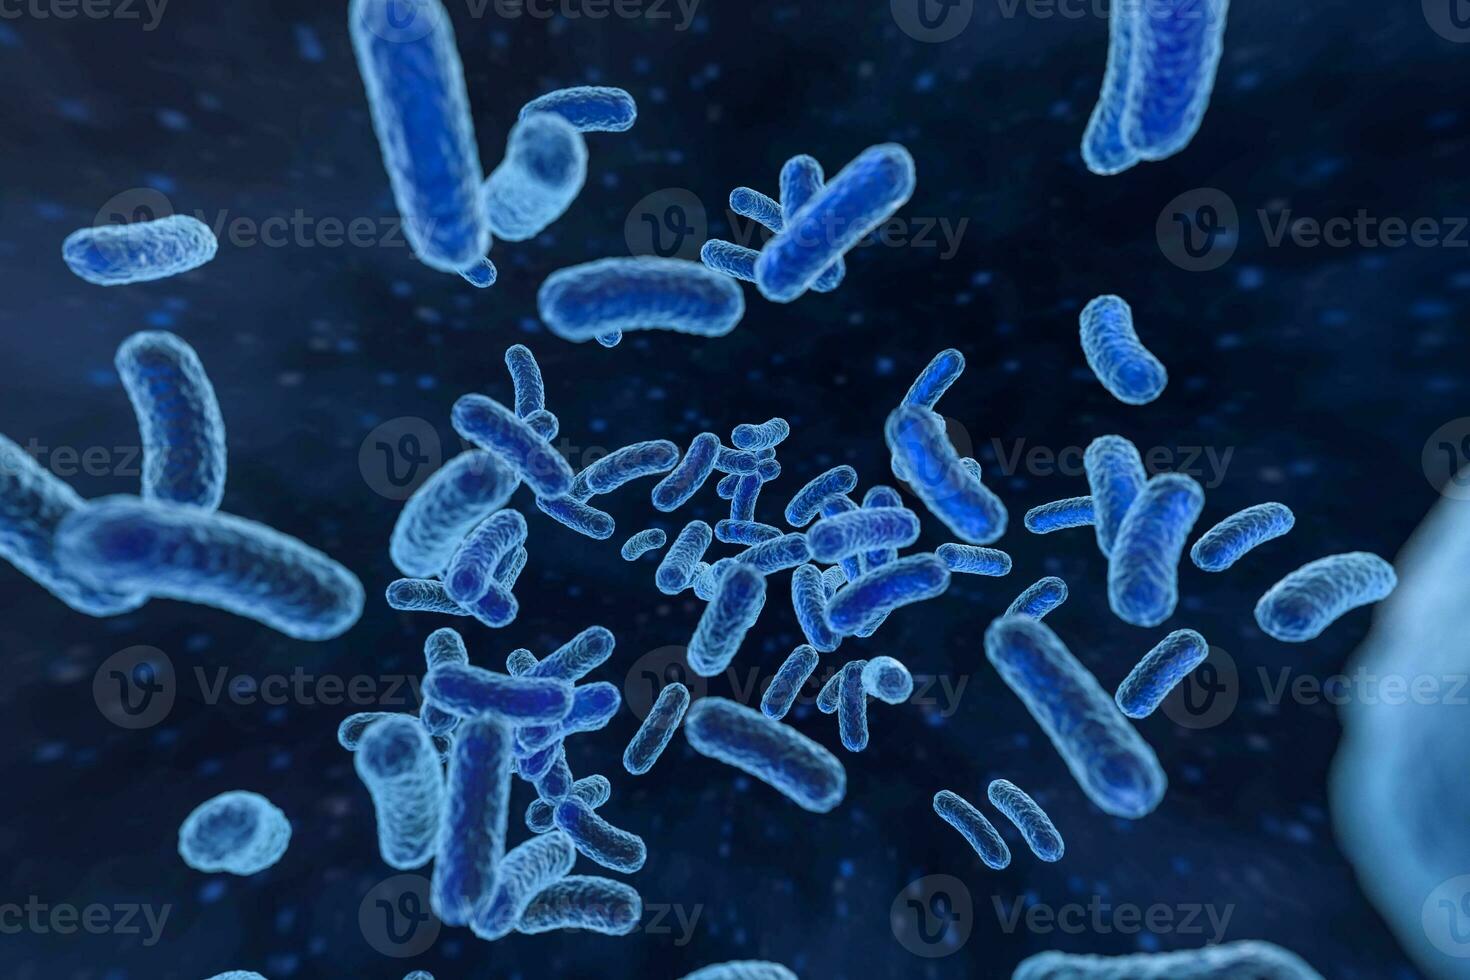 infektiös virus med yta detaljer på blå bakgrund, 3d tolkning. foto